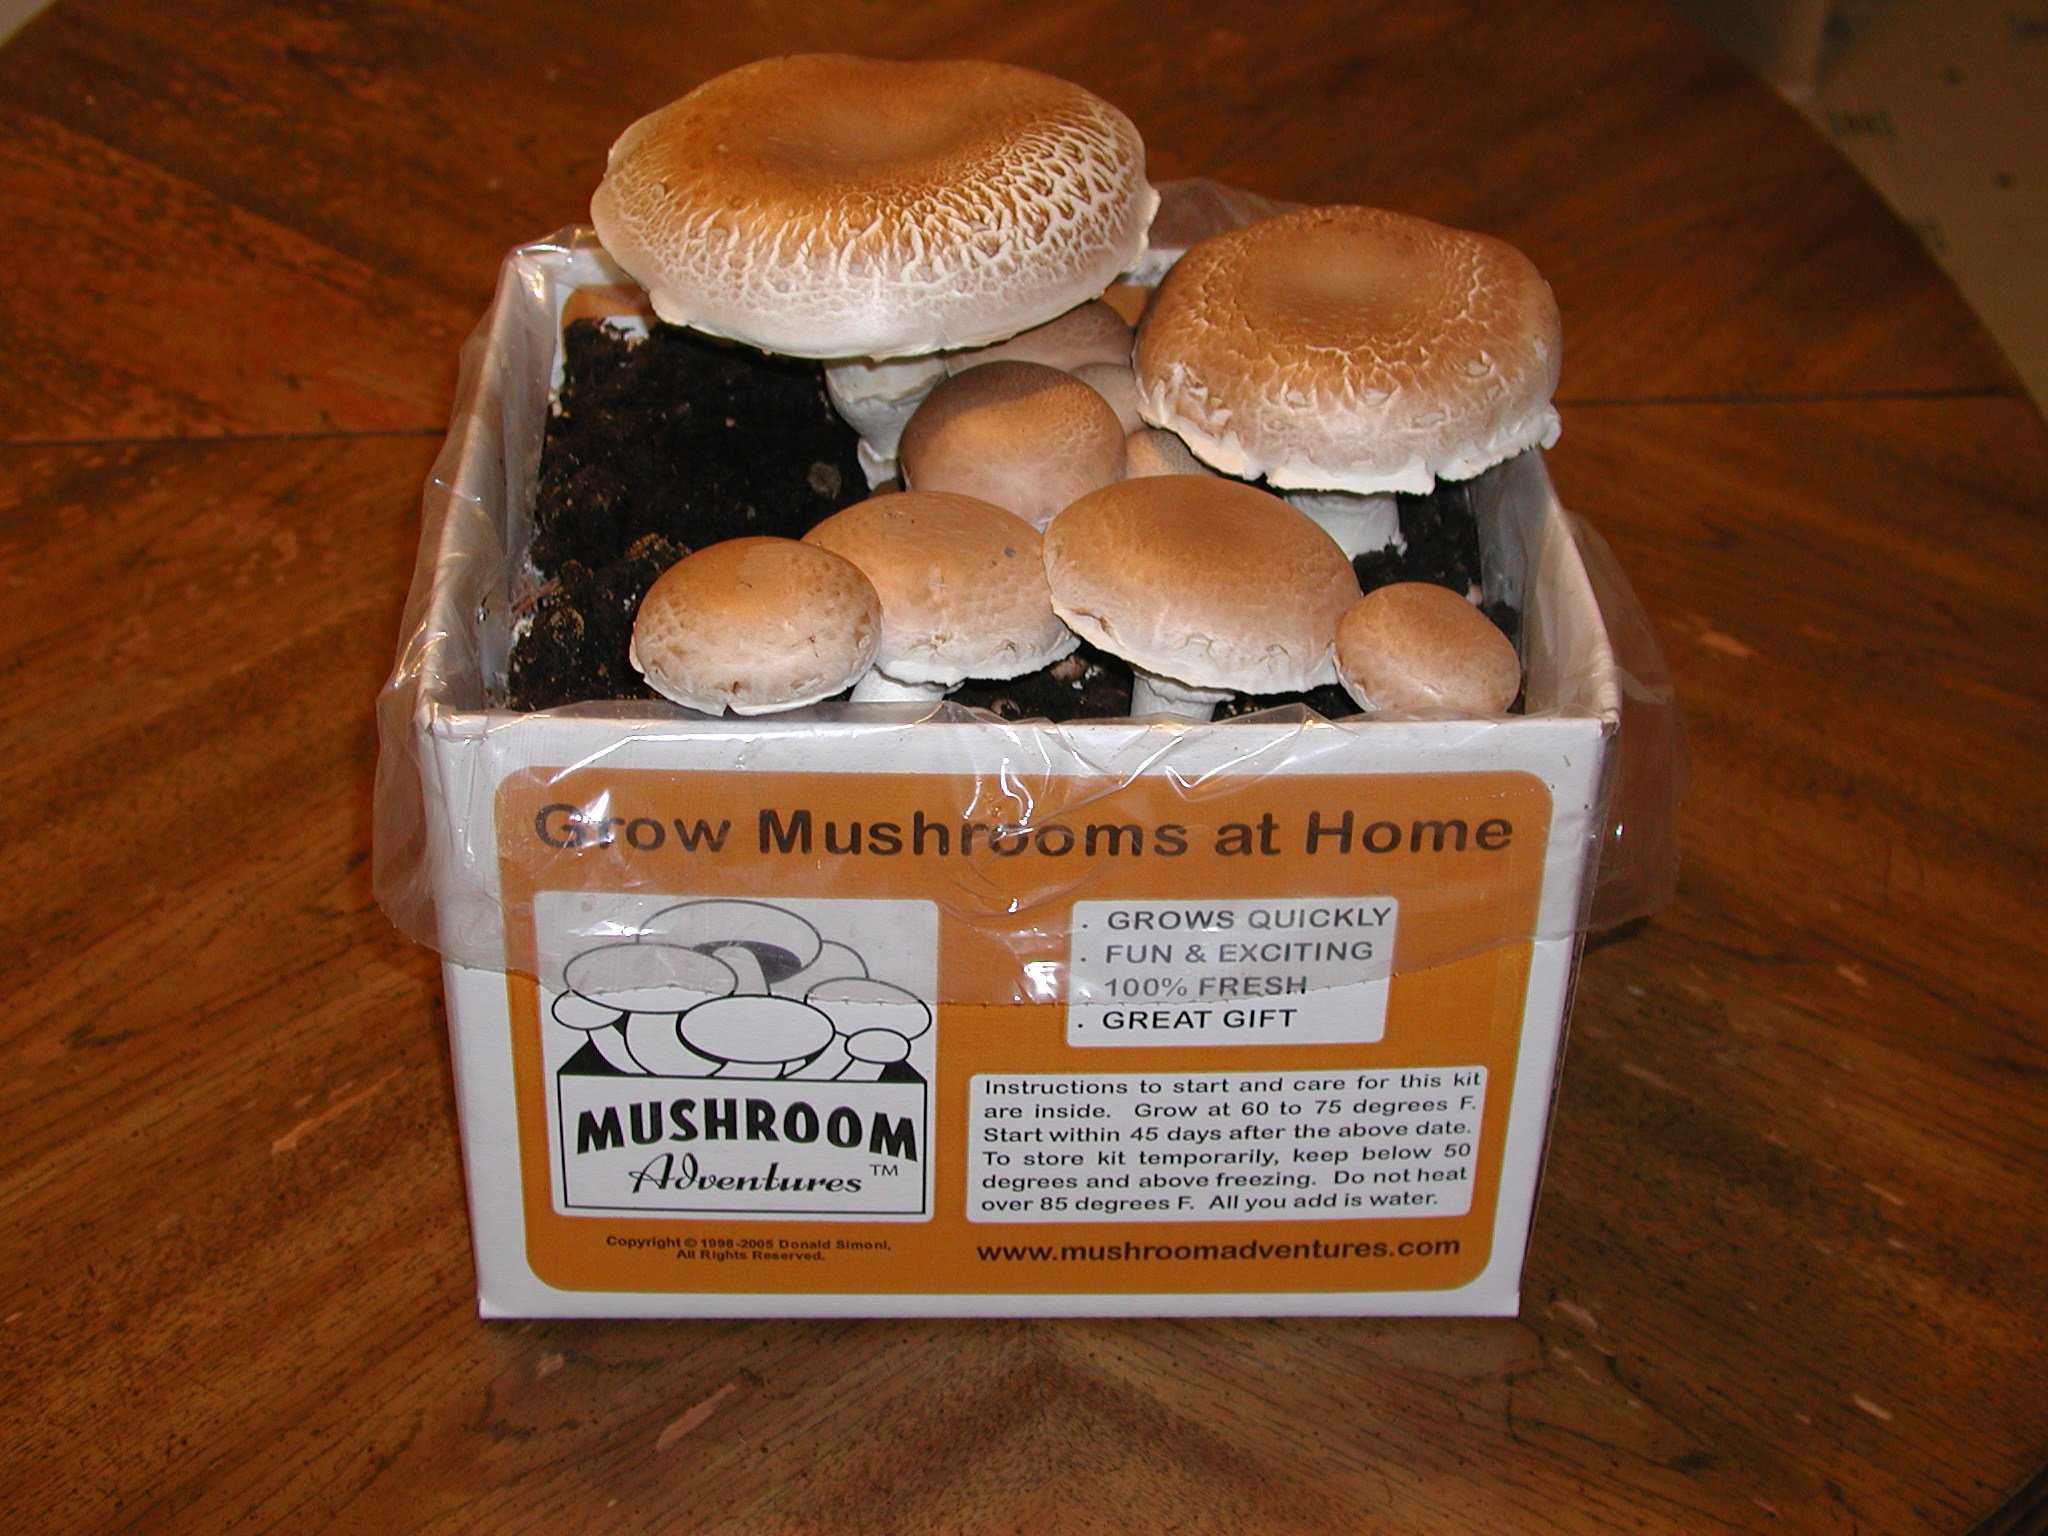 Выращиваем грибы на даче - грибной сезон у вас под окном!